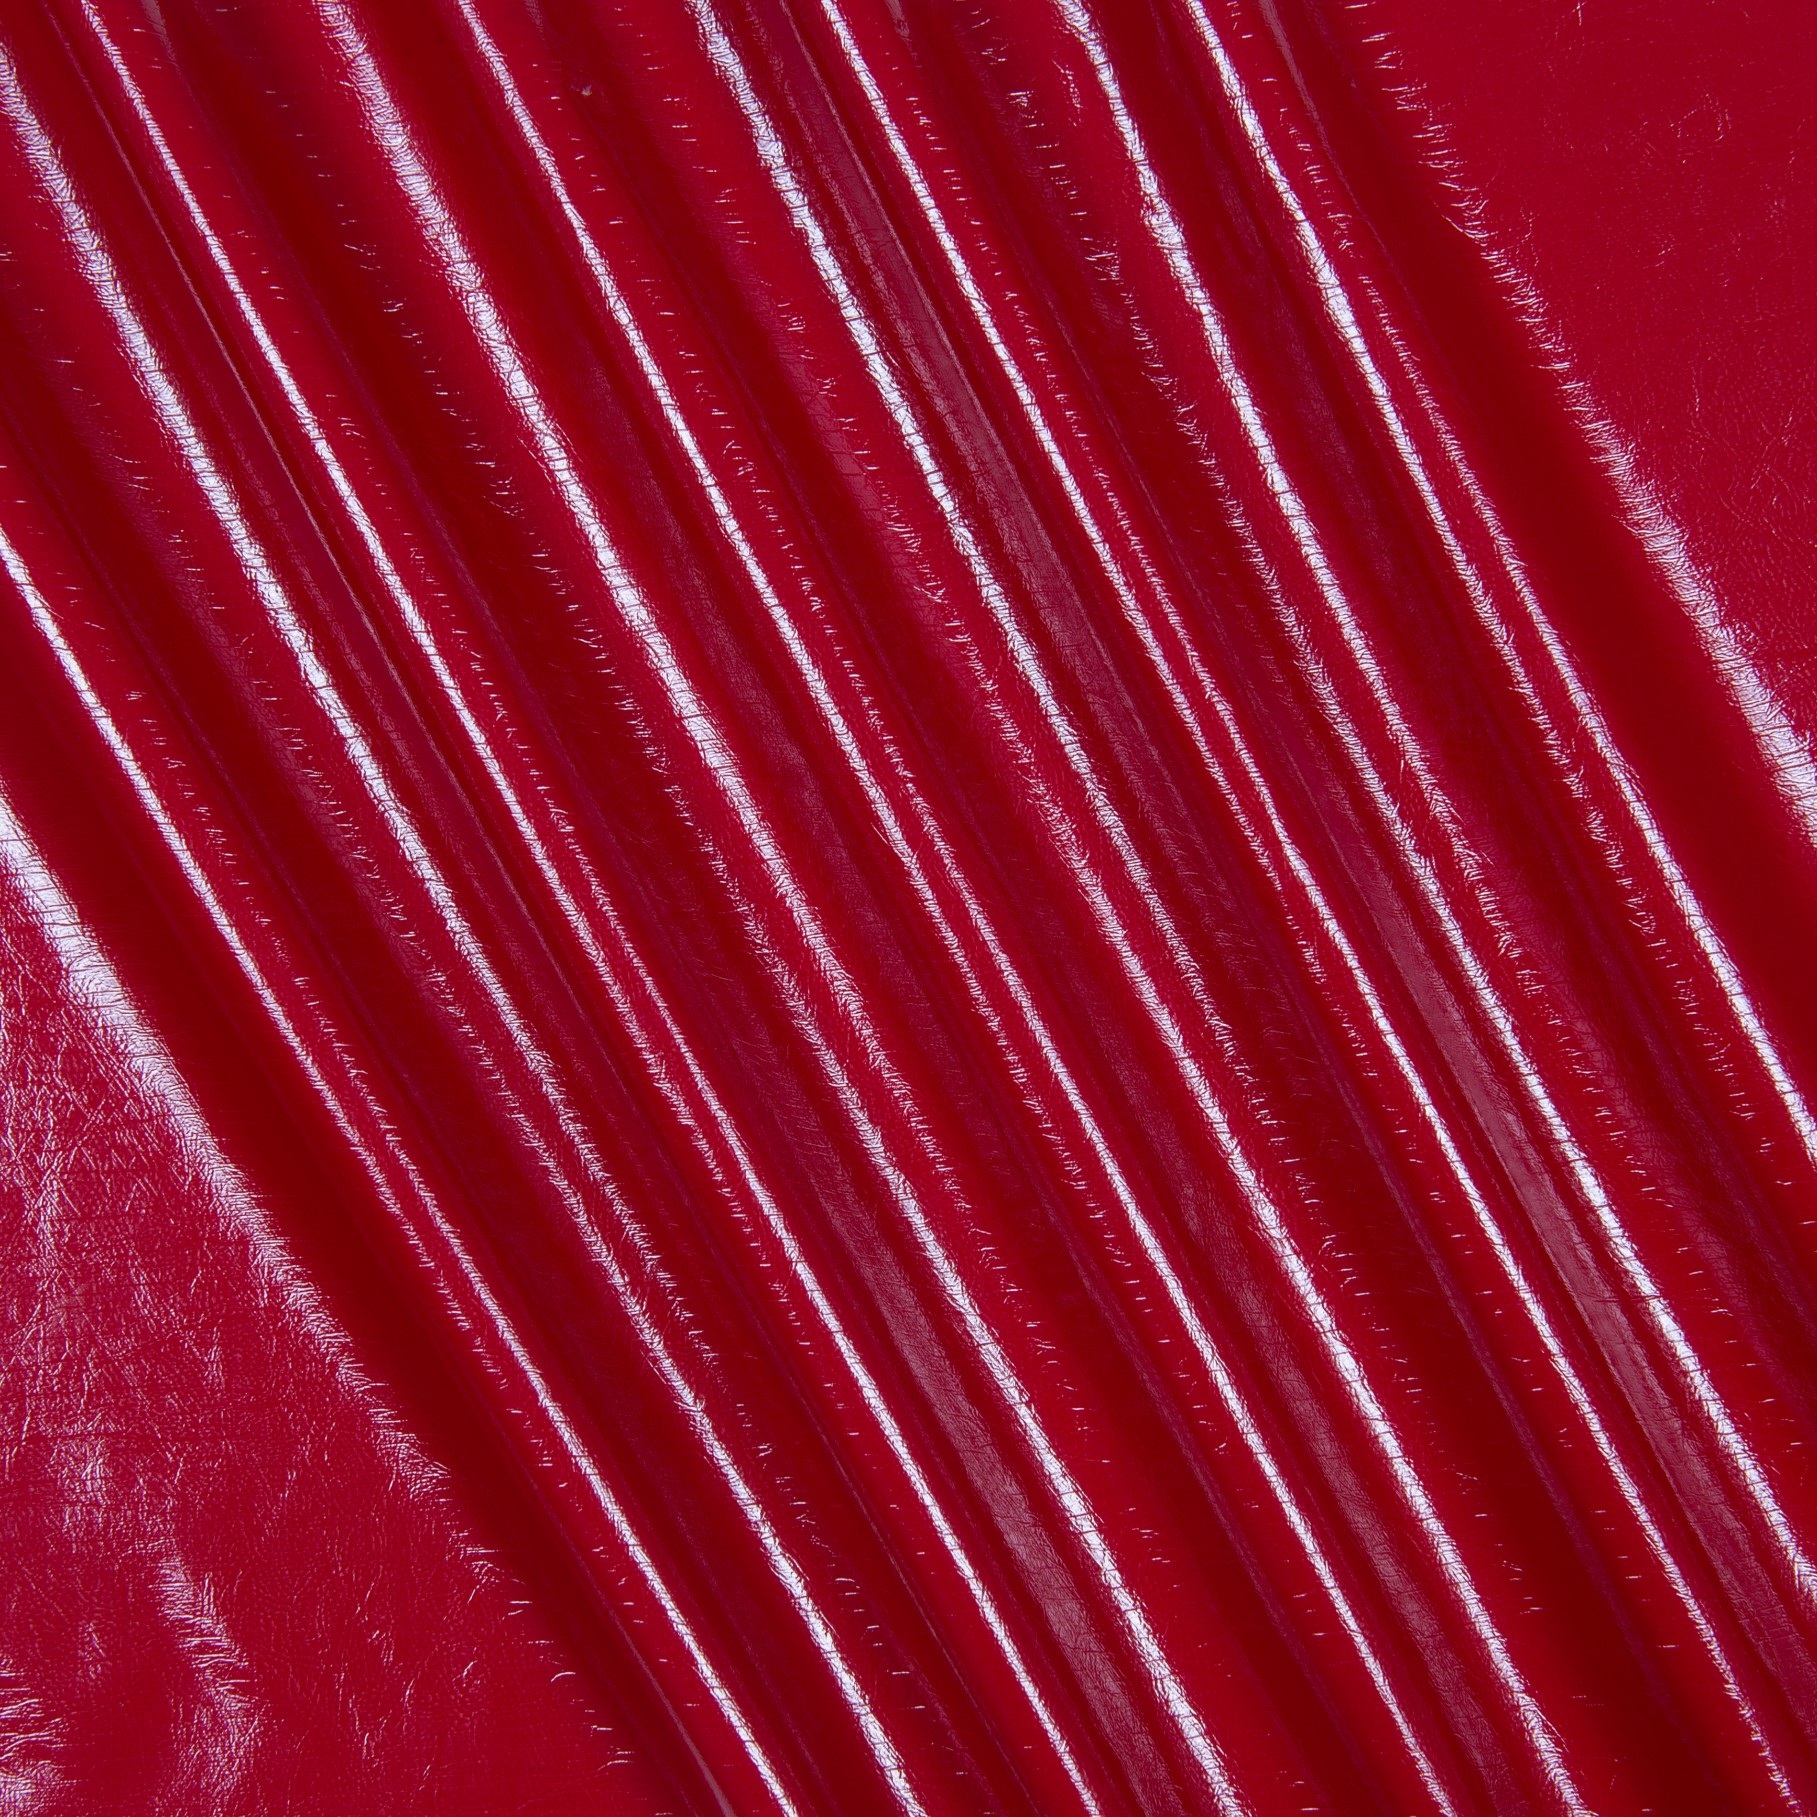 Искусственная кожа лак красный, размер 50х35 см, п/э на вискозе, плотность 220